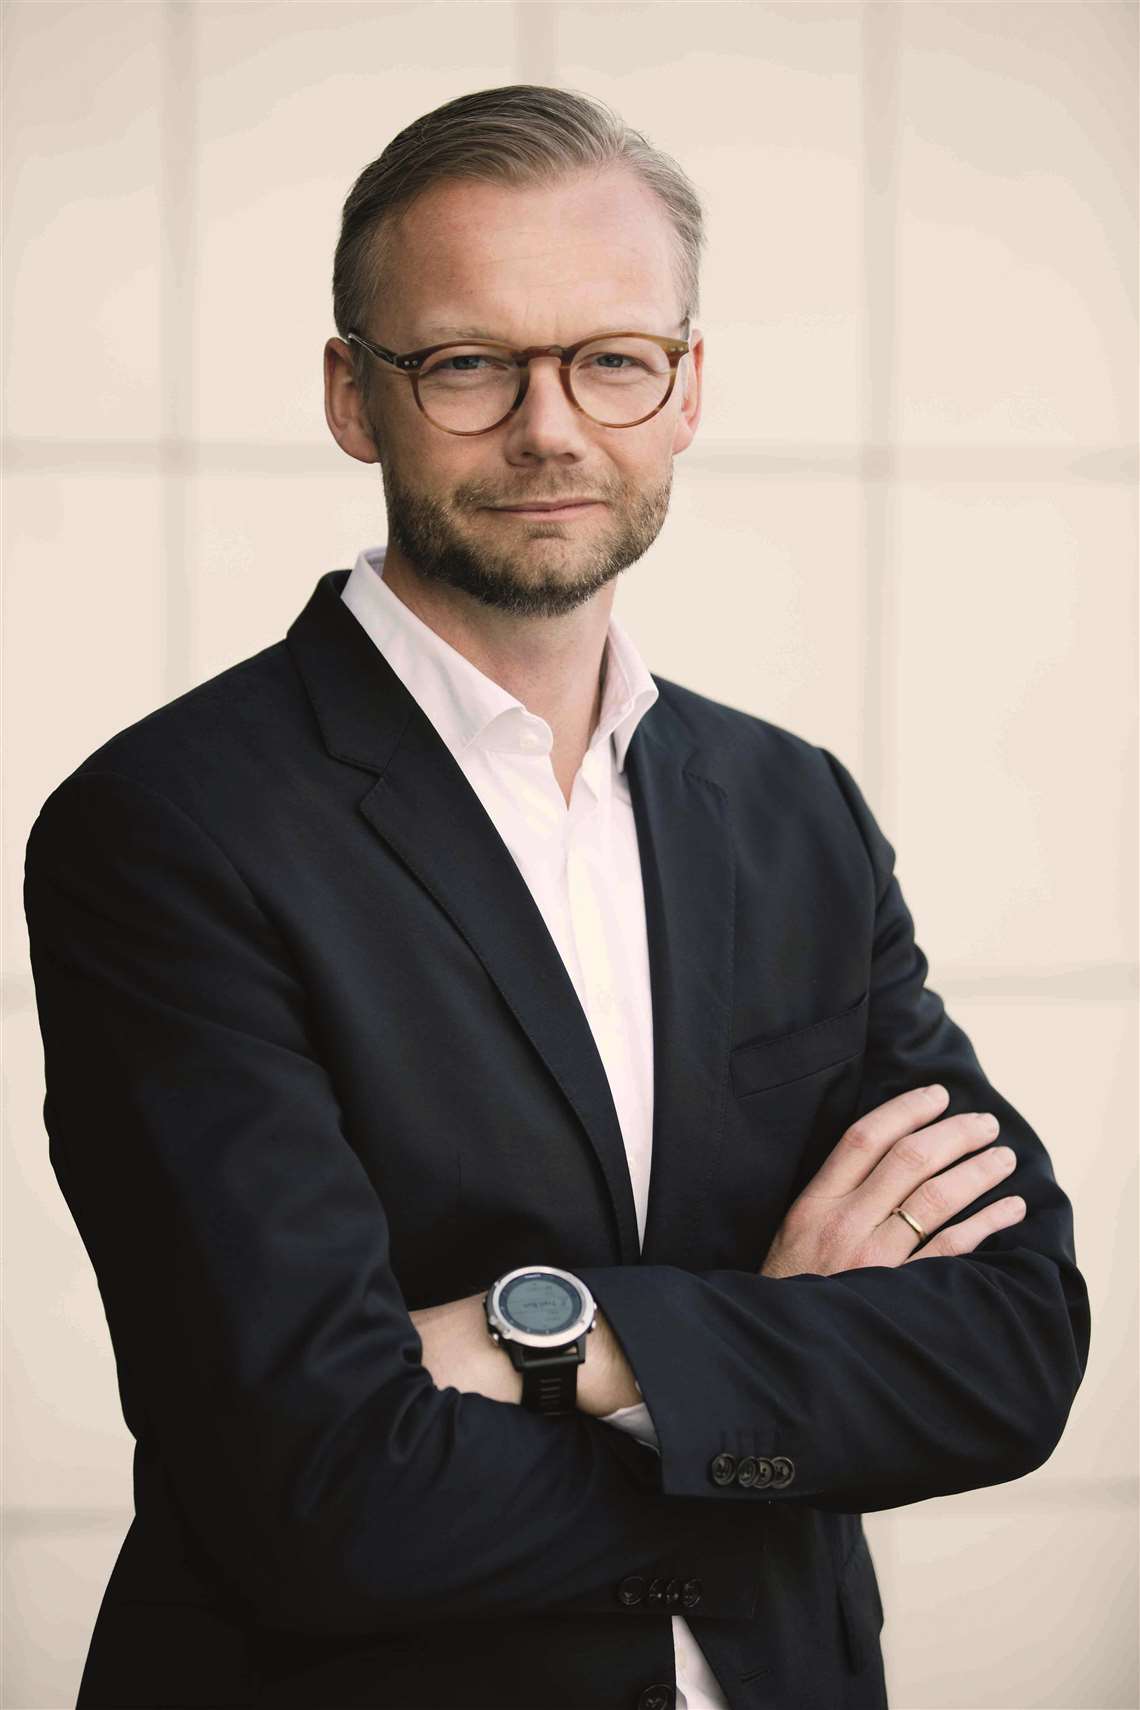 Trackunit CEO Soeren Brogaard